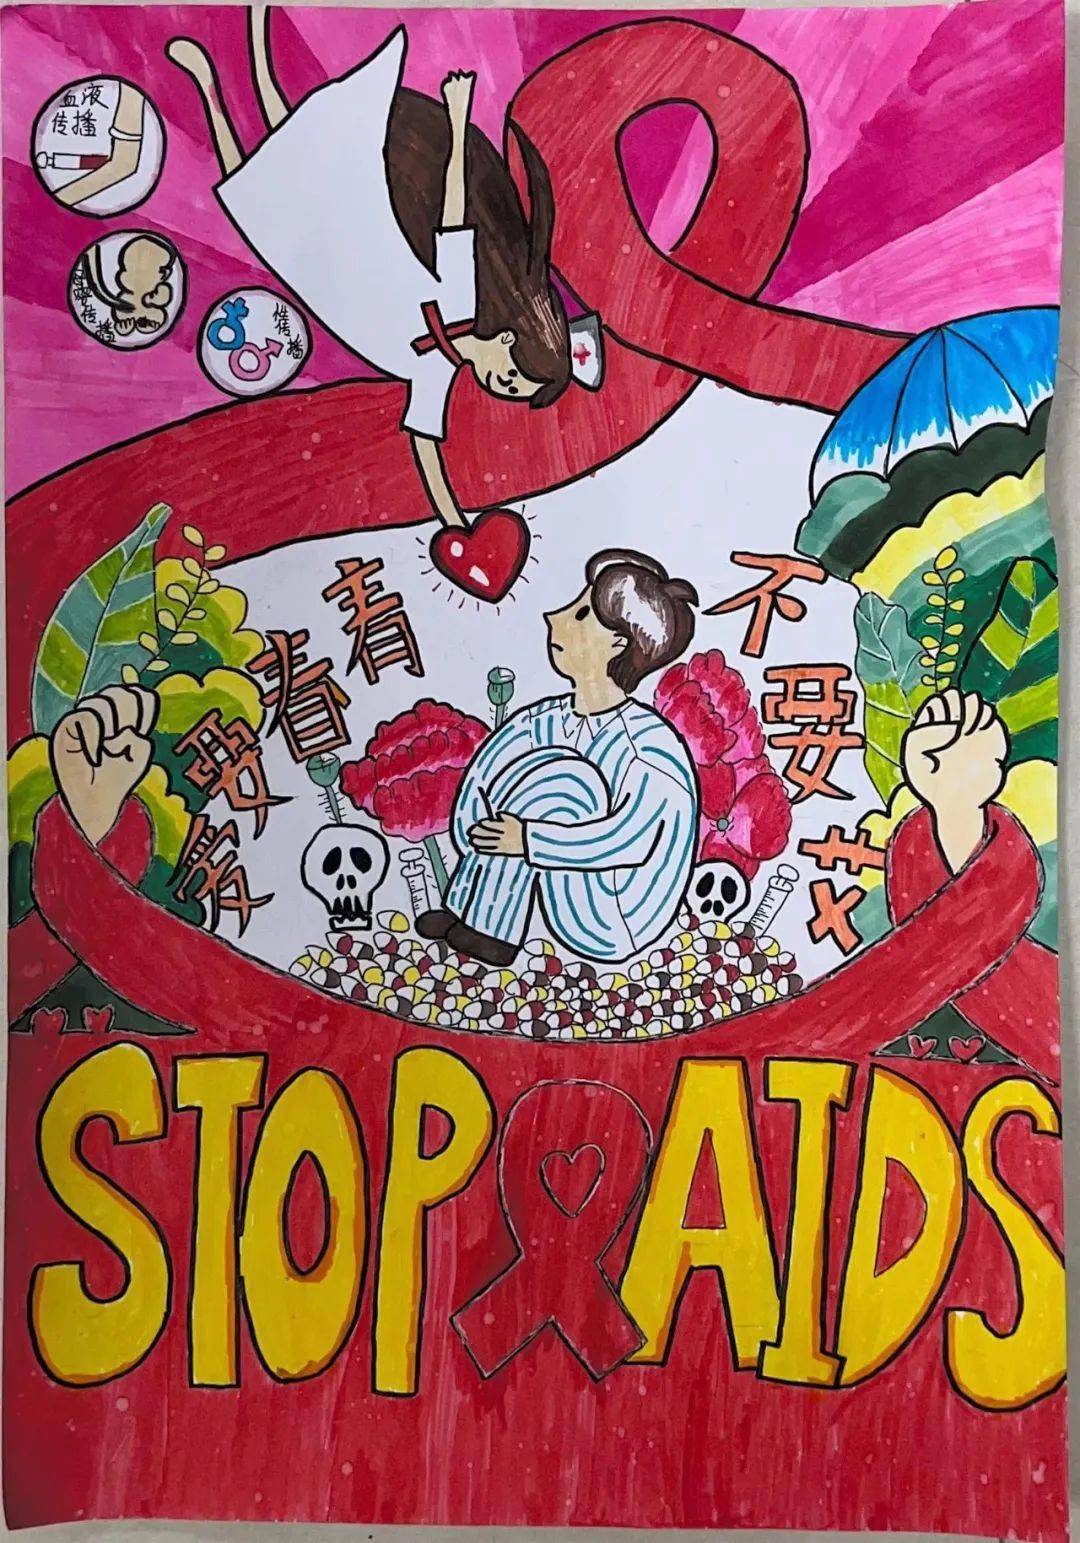 艾滋病绘画比赛作品图片